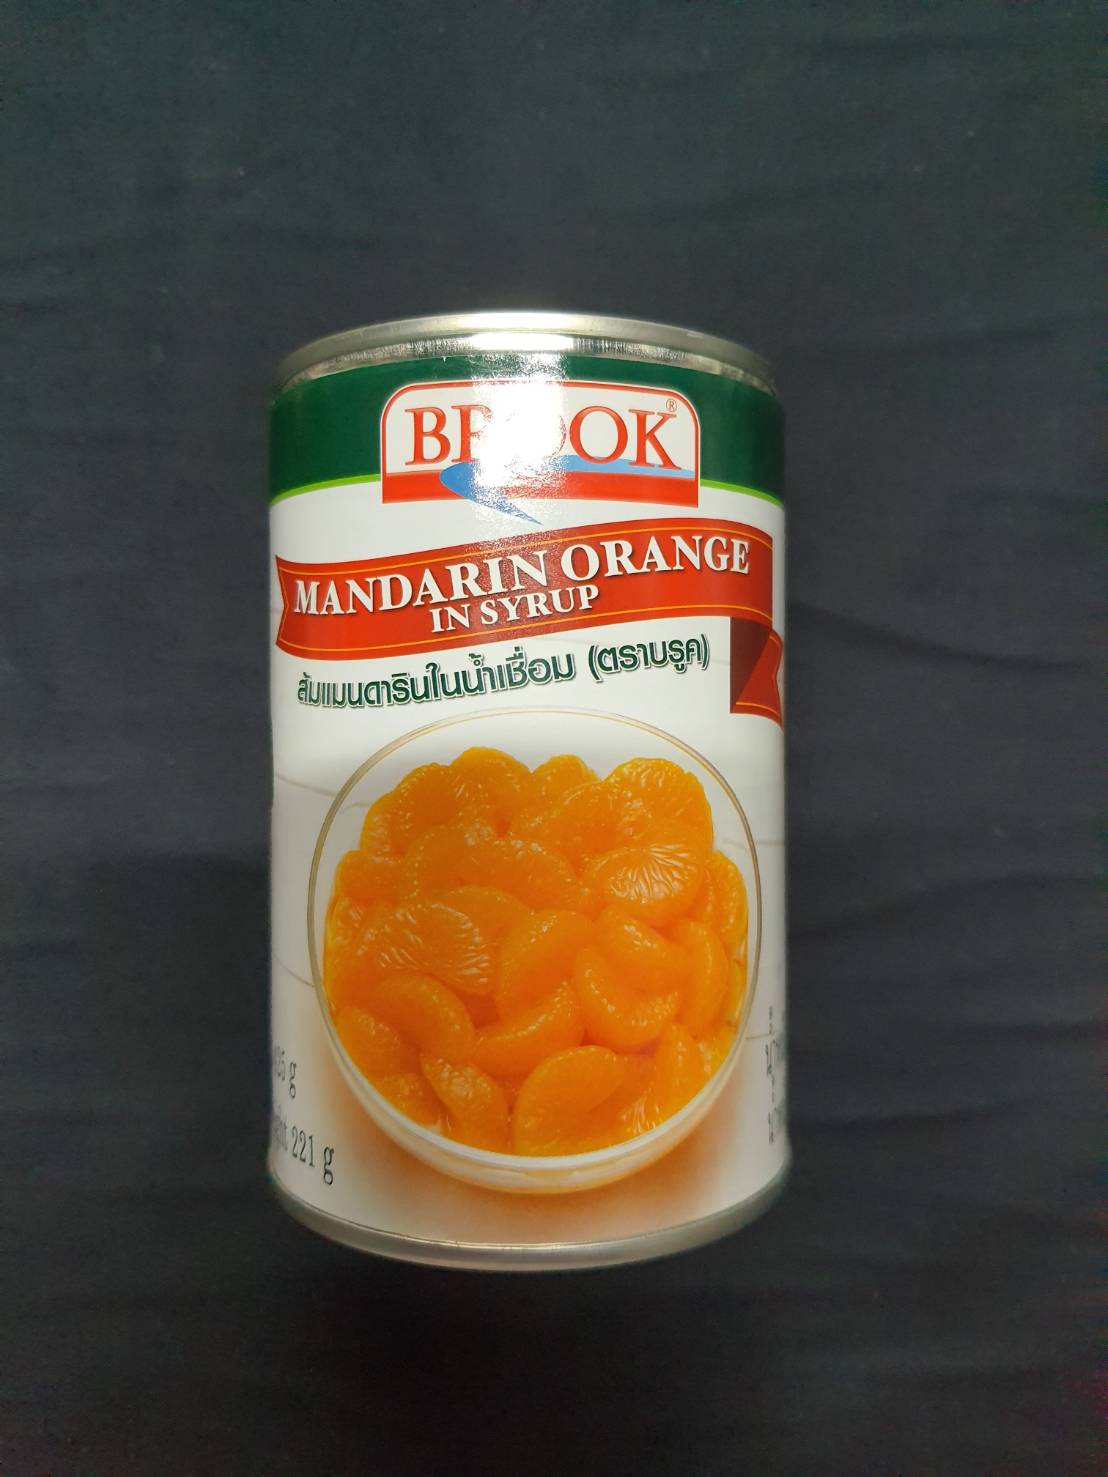 ส้มแมนดารินในน้ำเชื่อม 425 กรัม บรูค Mandarin Orange in syrup Brook 425 g